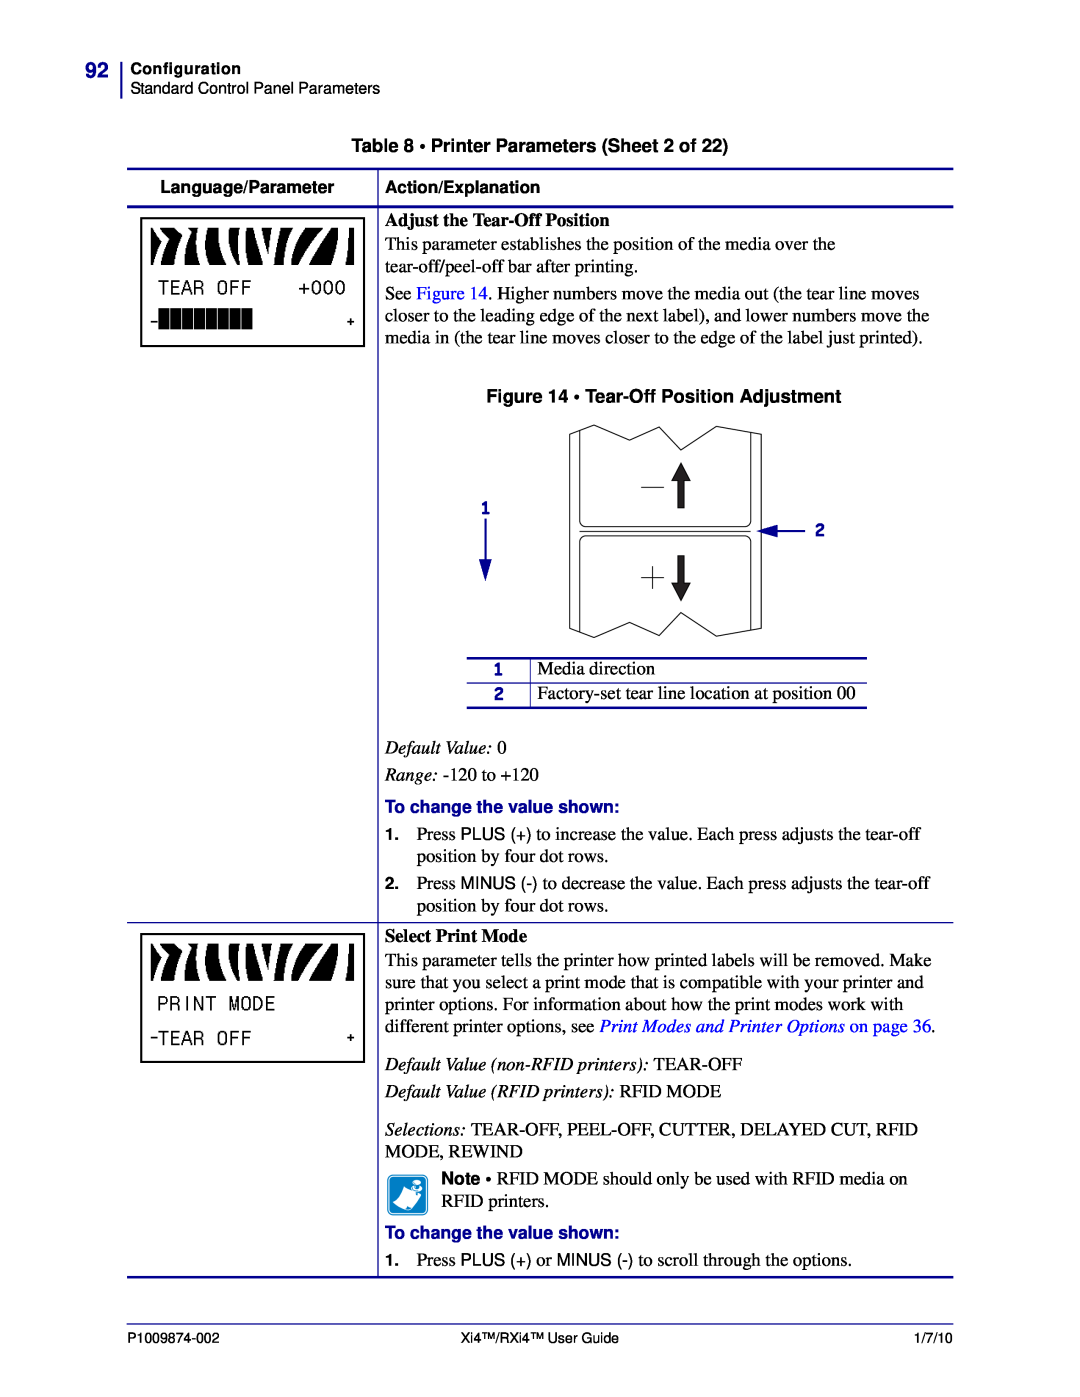 Zebra Technologies 14080100200 Printer Parameters Sheet 2 of, Adjust the Tear-Off Position, Tear-Off Position Adjustment 